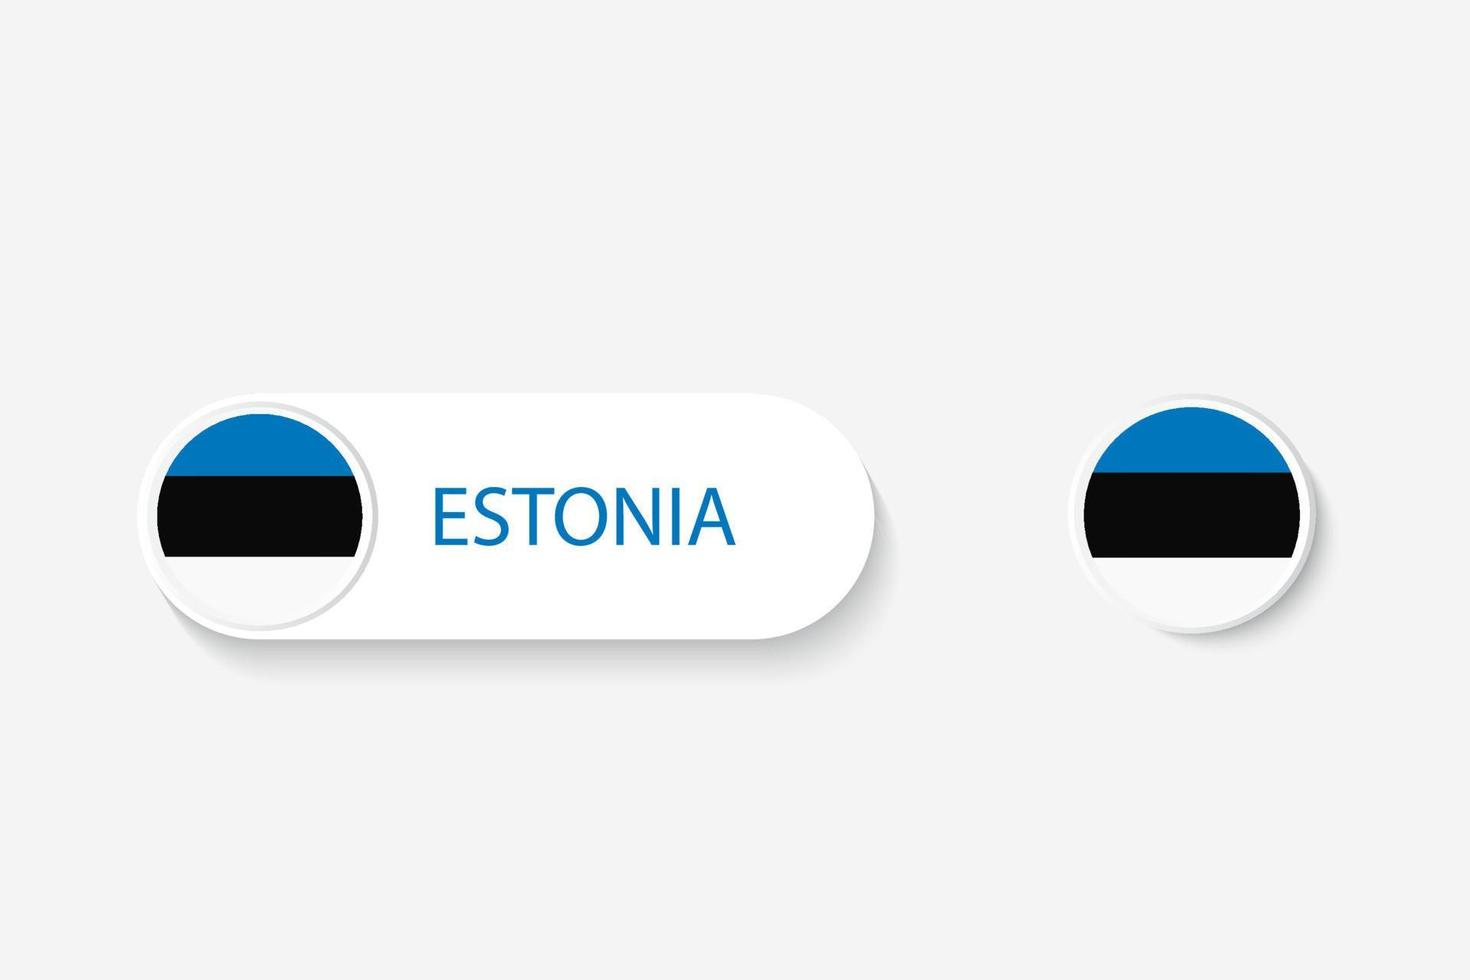 estlands knappflagga i illustration av oval formad med ordet estonia. och knappflagga estland. vektor